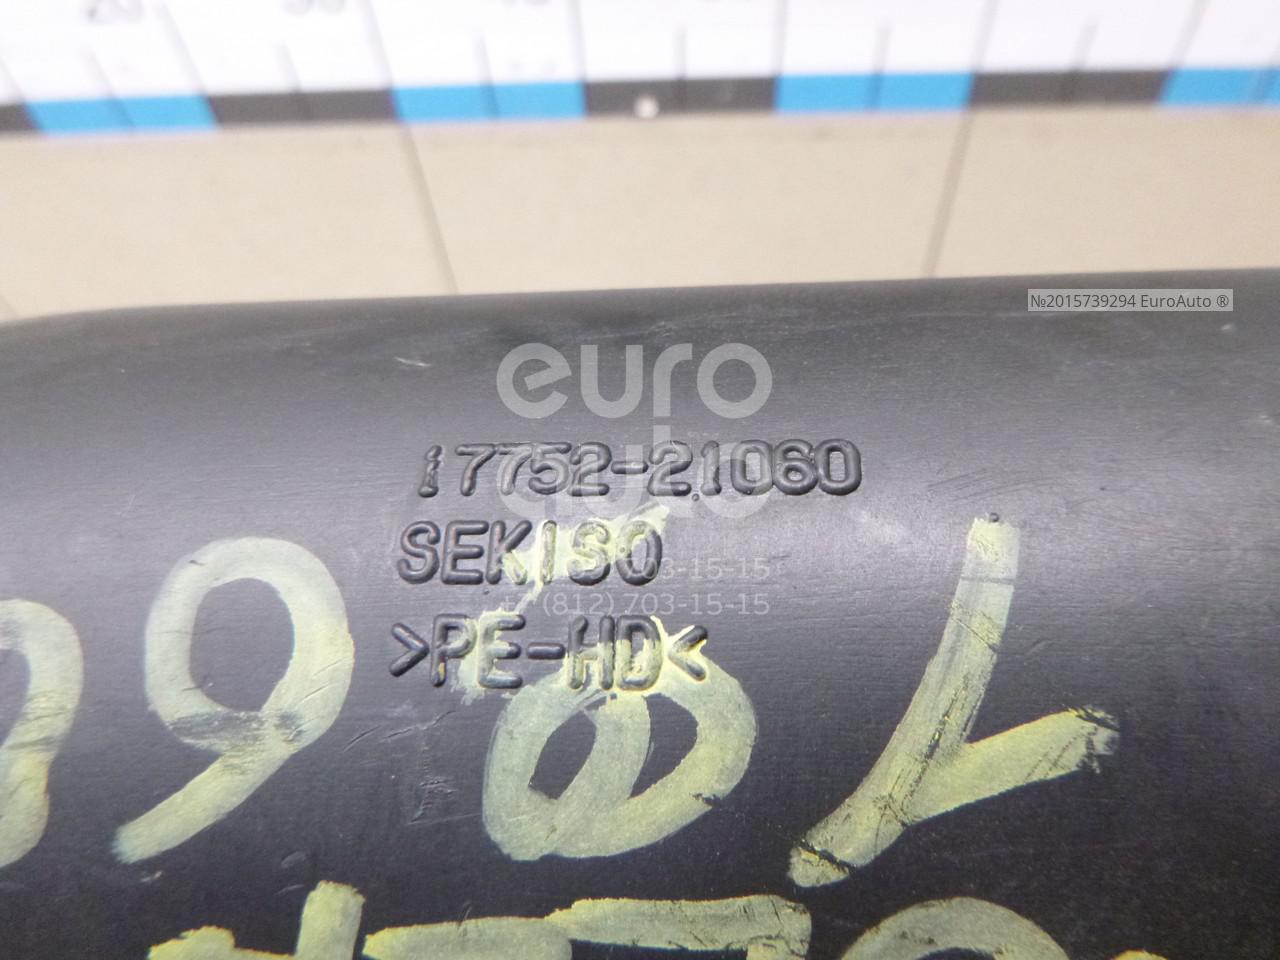 15 euro in sek